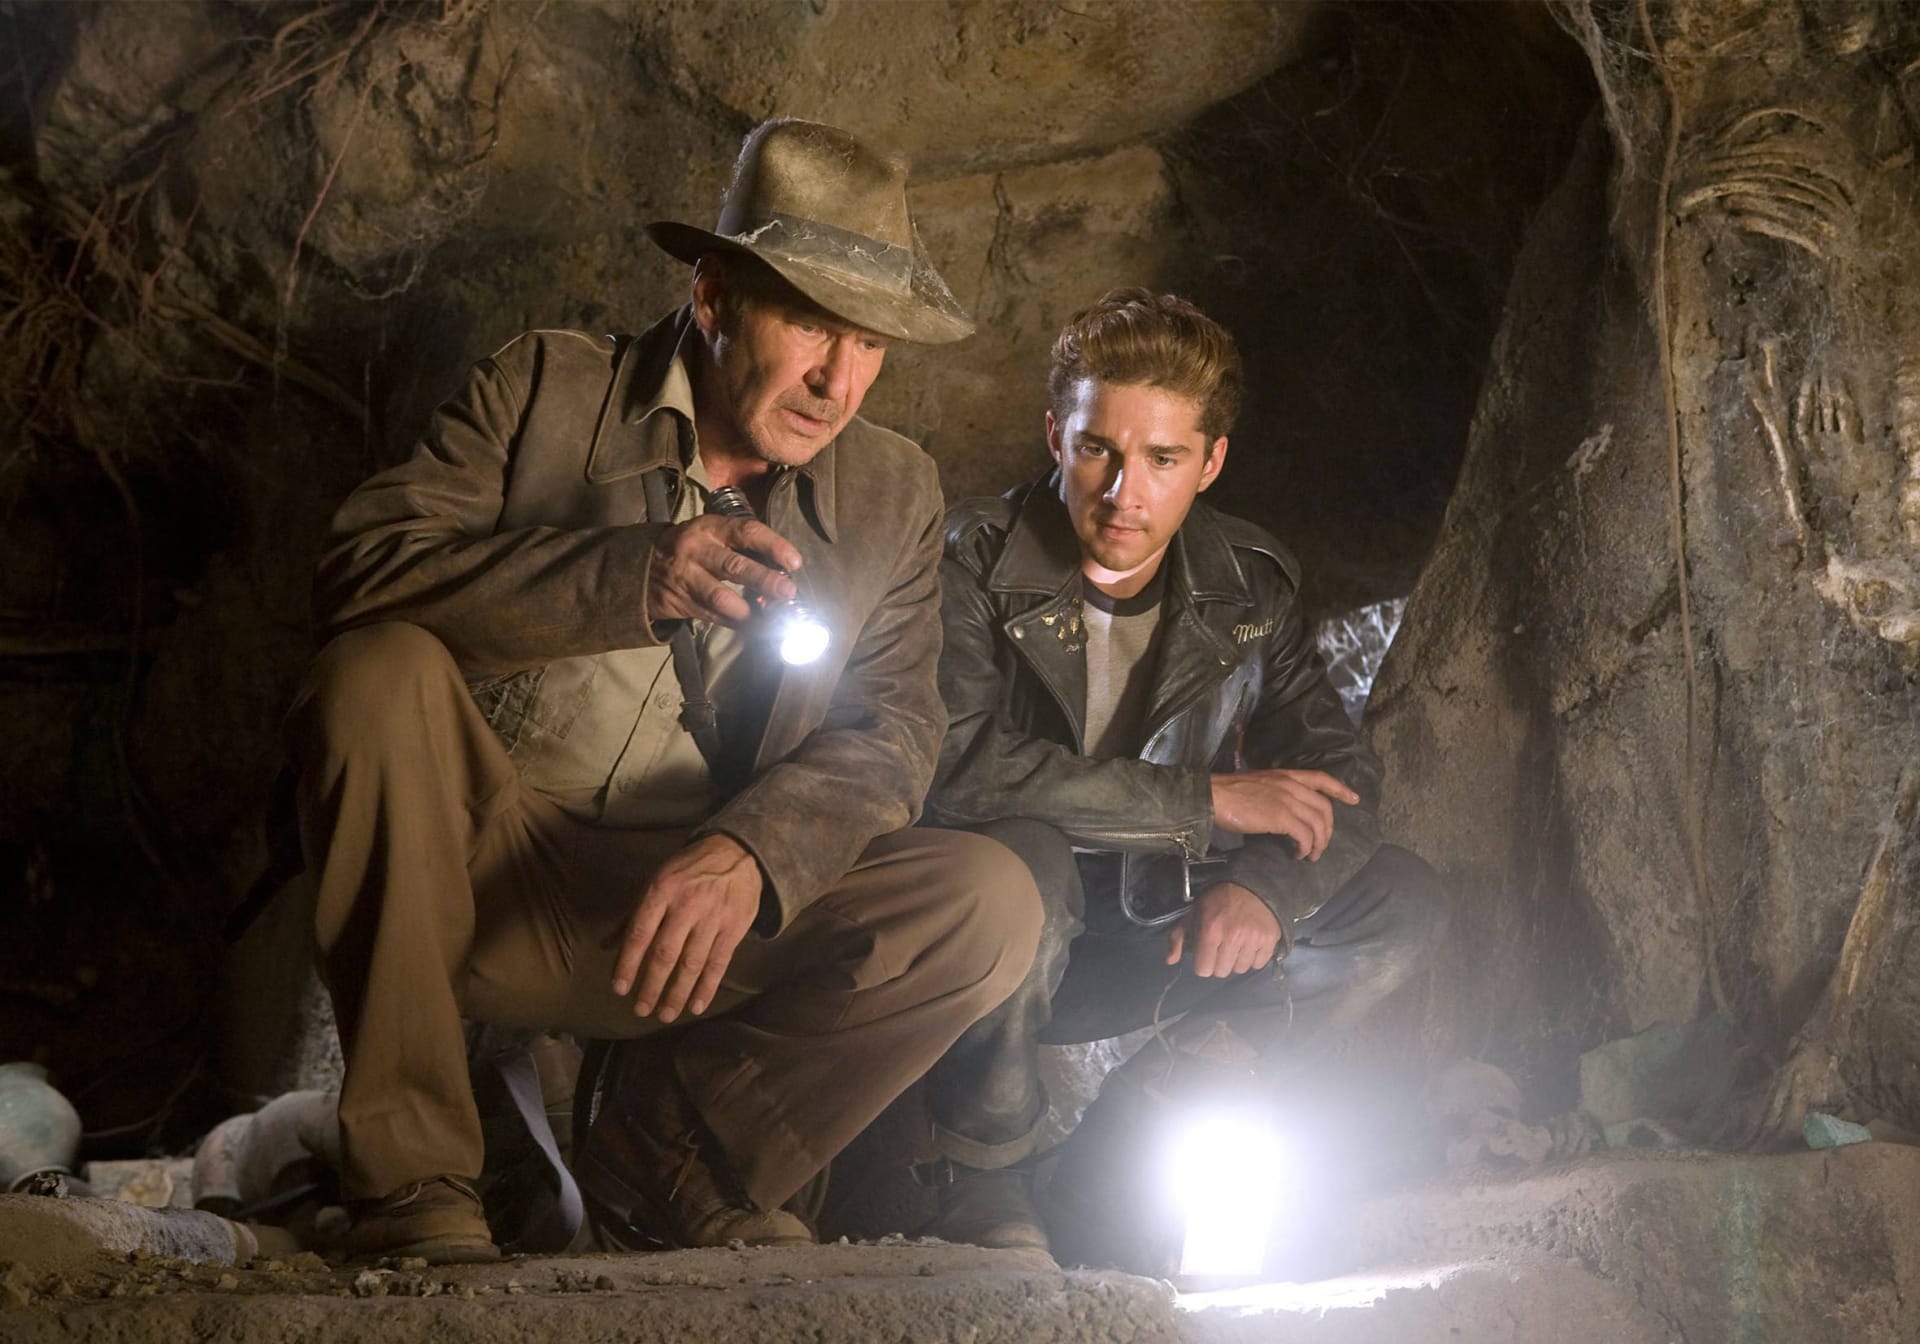 Čtvrté pokračování nazvané Indiana Jones a Království křišťálové lebky (2008) zase představilo Indyho syna, kterého ztvárnil Shia LaBeouf.